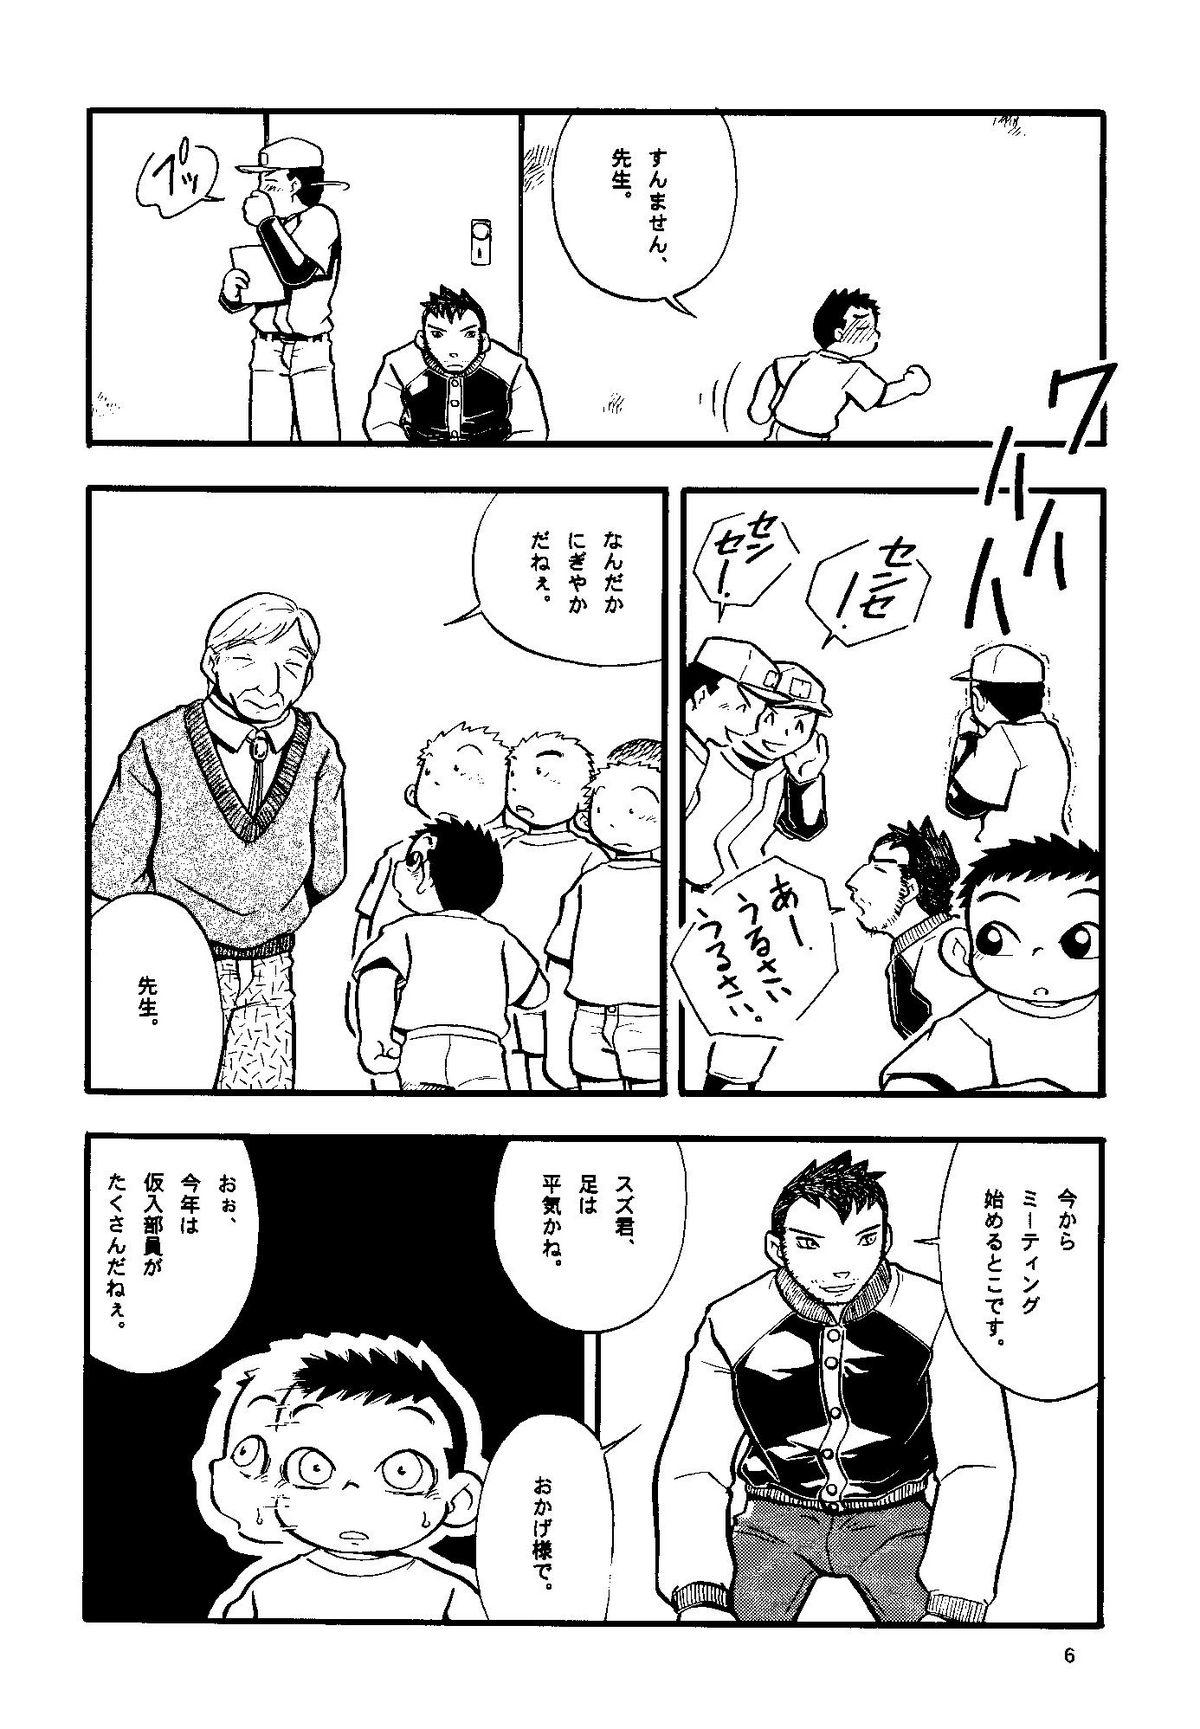 Bisex Futoshi Yagihiroshi (Yuubinya) - Youta to Sempai Blowing - Page 6